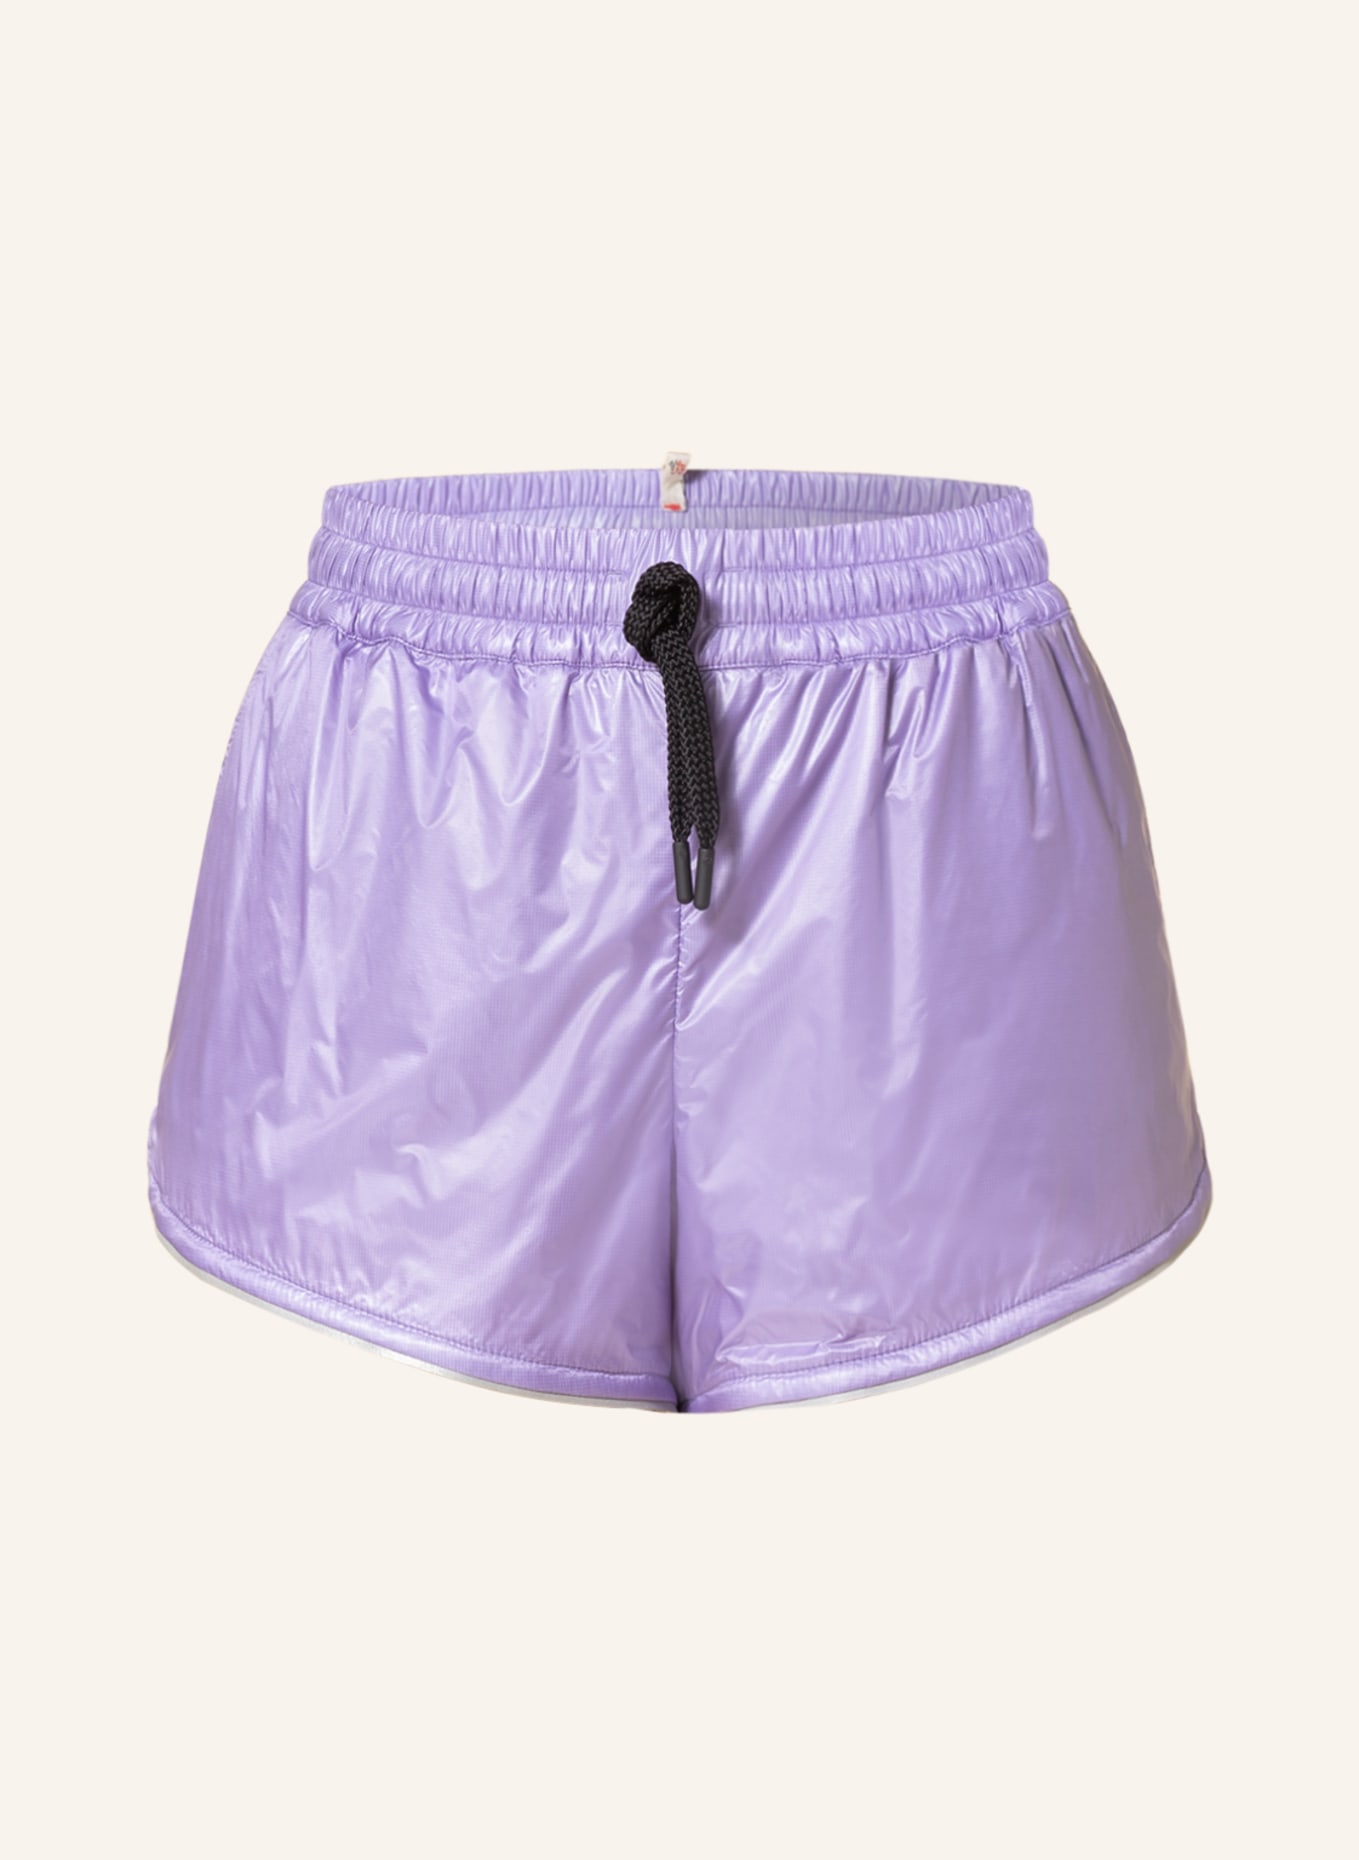 MONCLER GRENOBLE Shorts, Color: PURPLE (Image 1)